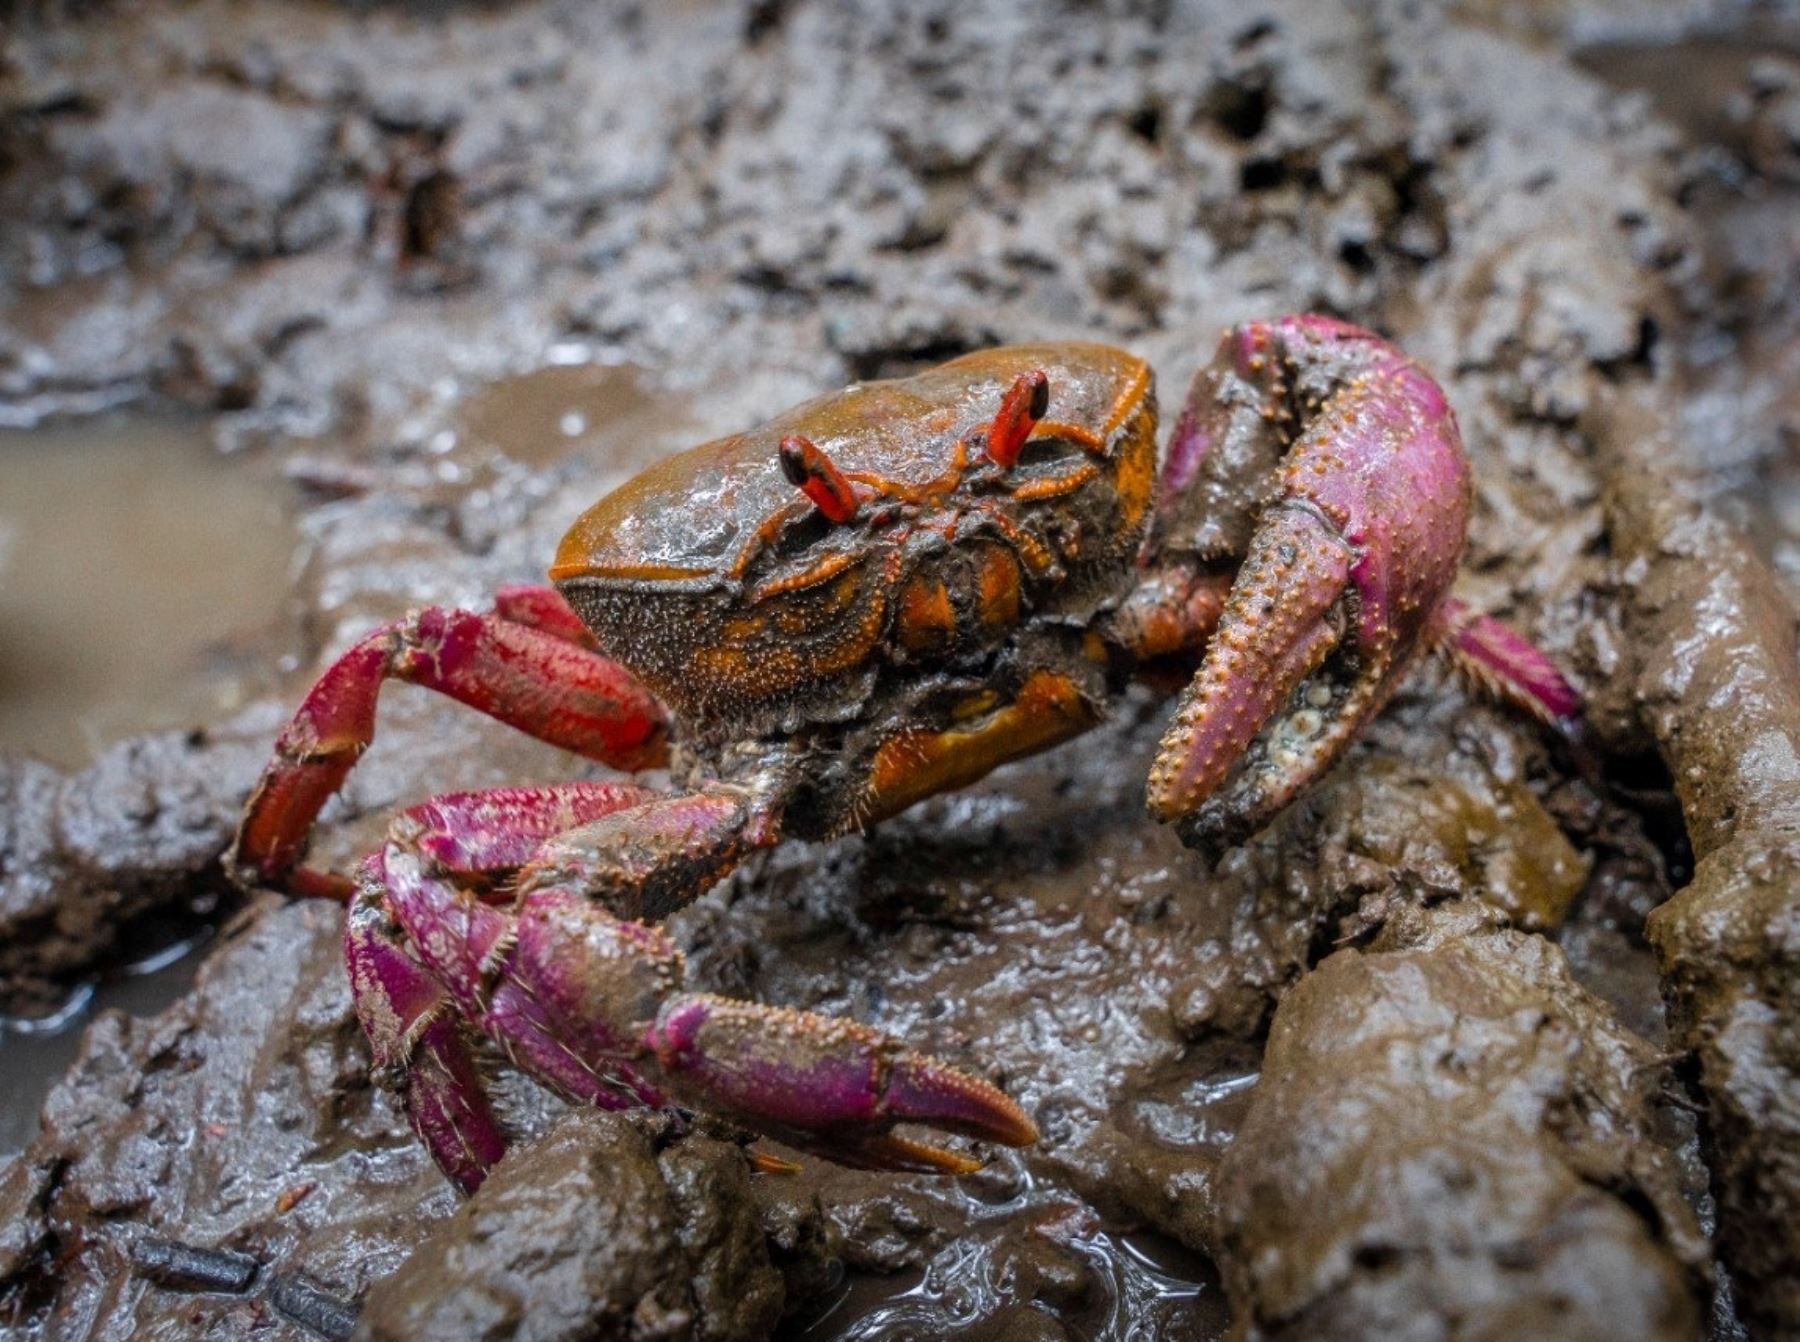 Hasta el 28 de febrero estará vigente en Tumbes la veda del cangrejo rojo del manglar. La medida busca proteger la conservación de esta especie emblemática de esta región. Foto: Milagros Rodríguez